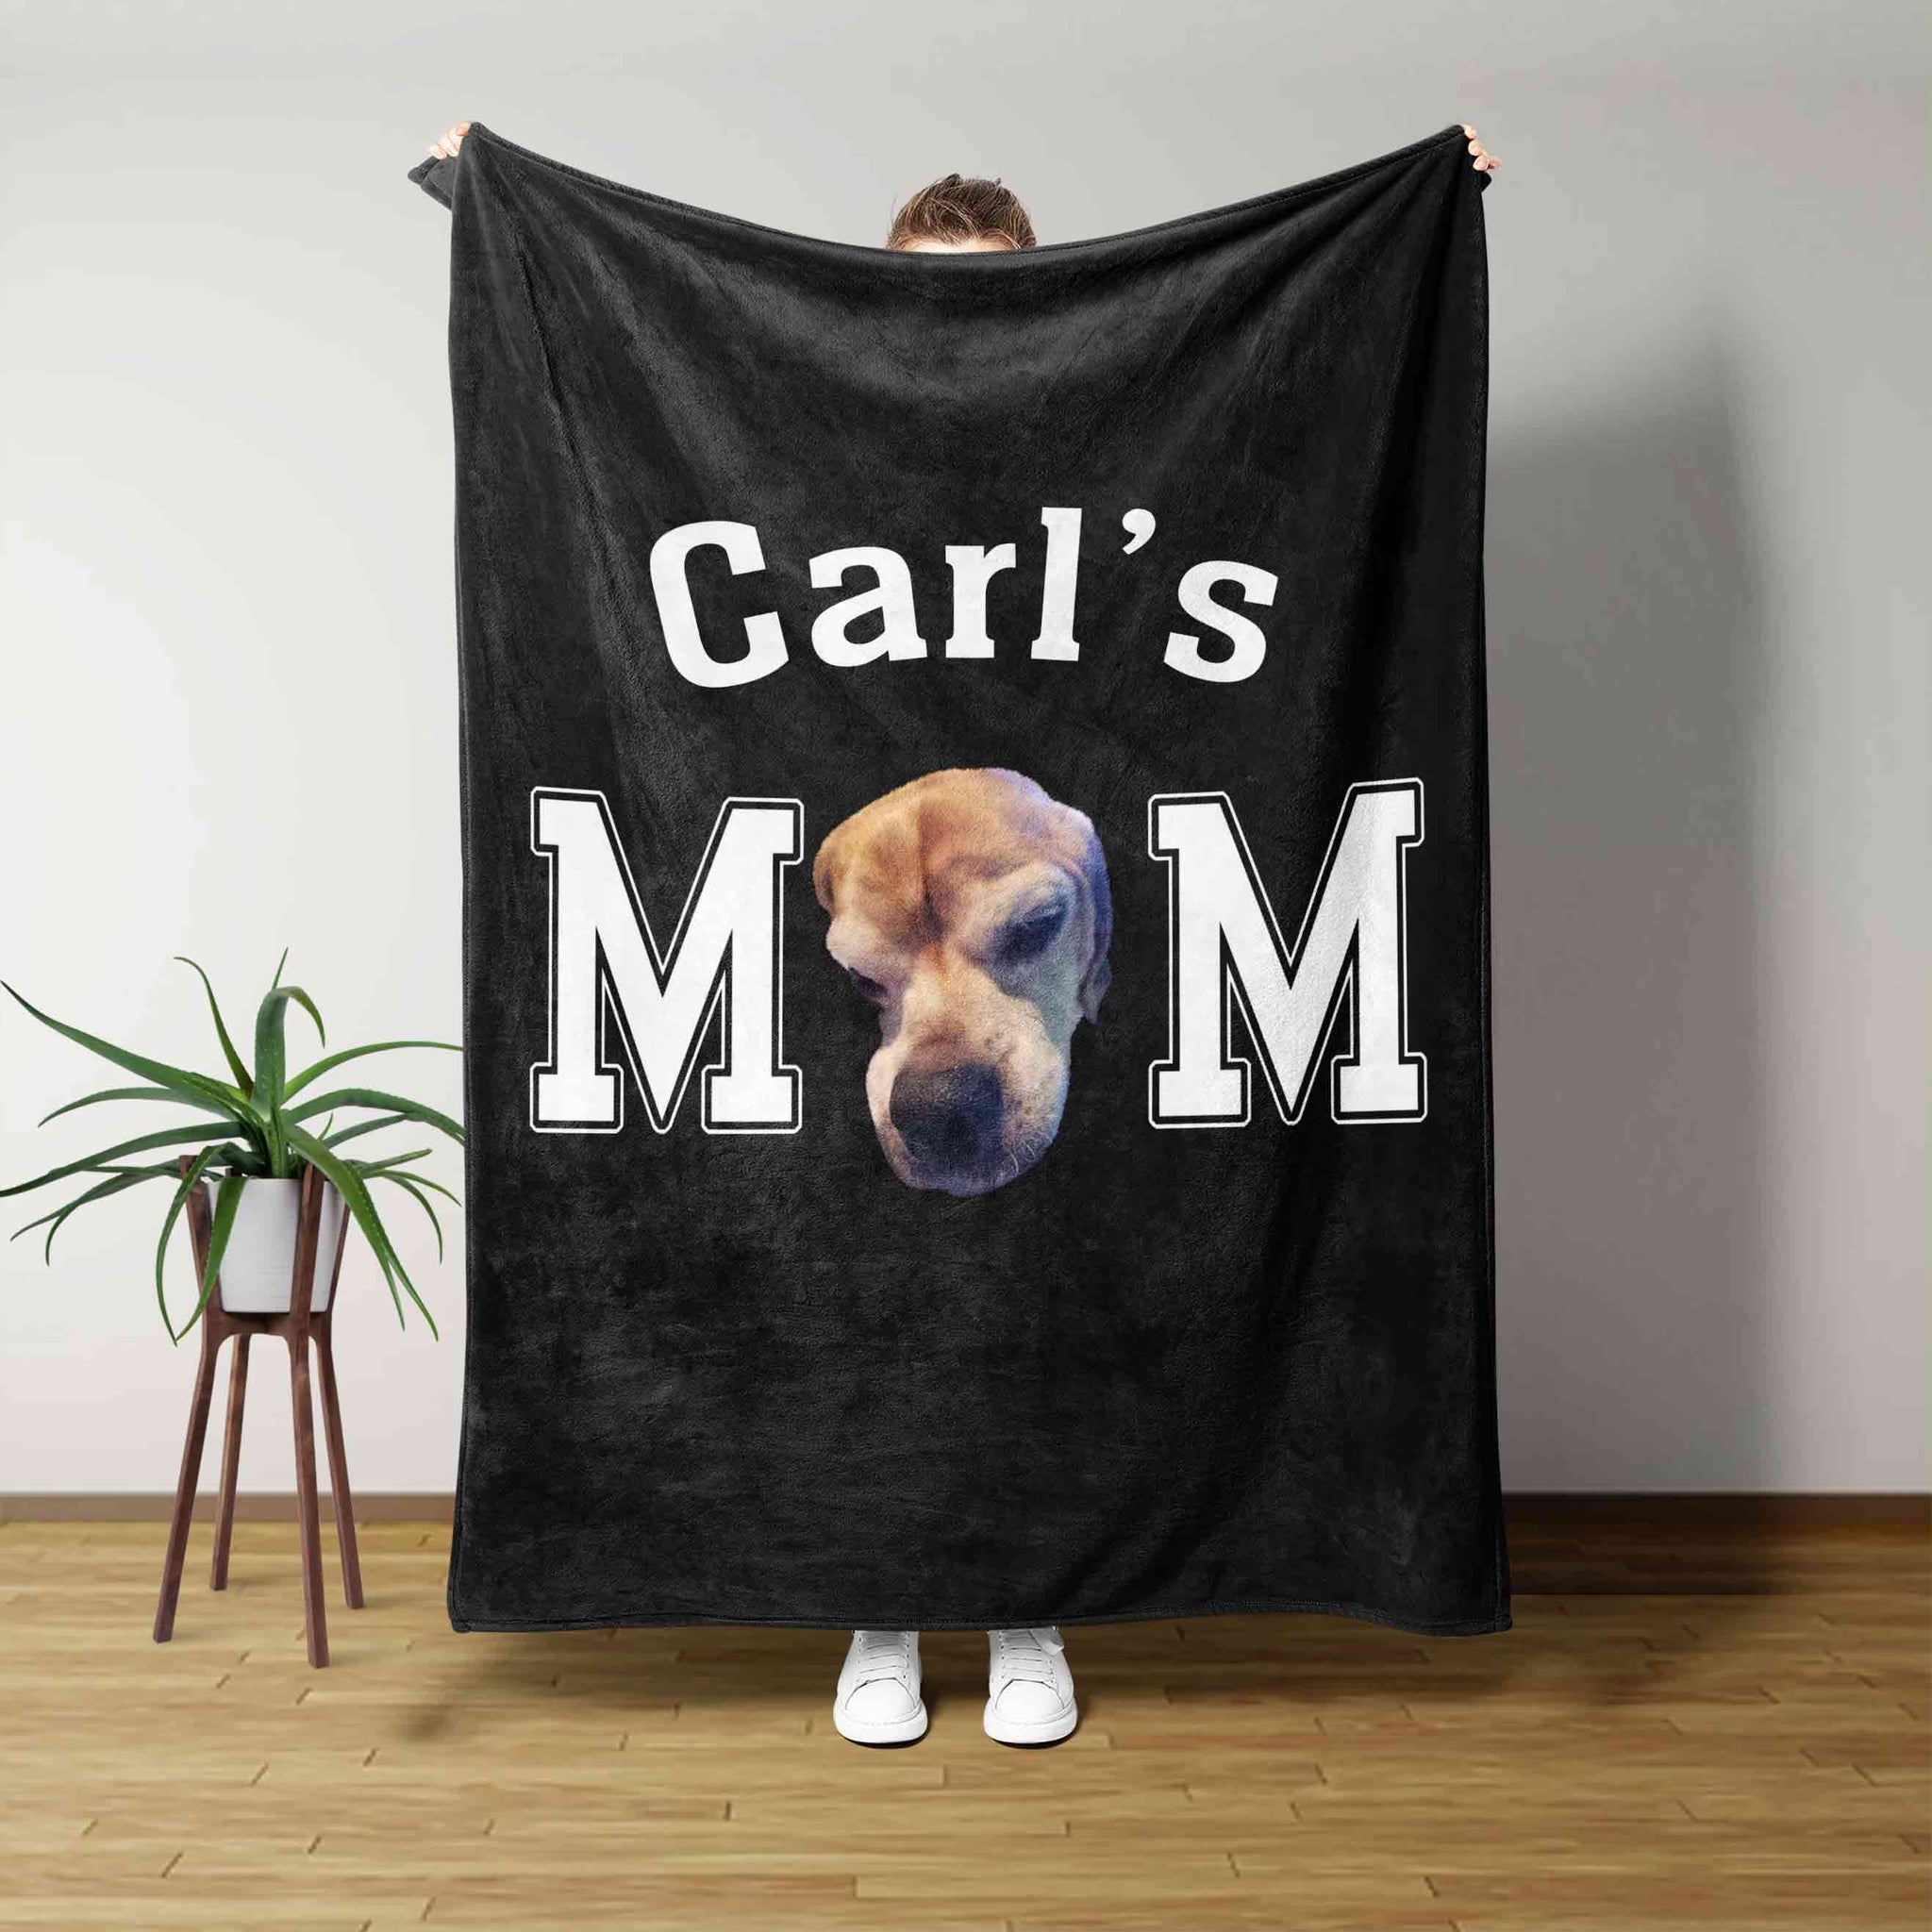 Carl's Mom Blanket, Dog Blanket, Custom Name Blanket, Custom Image Blanket, Family Blanket, Gift Blanket